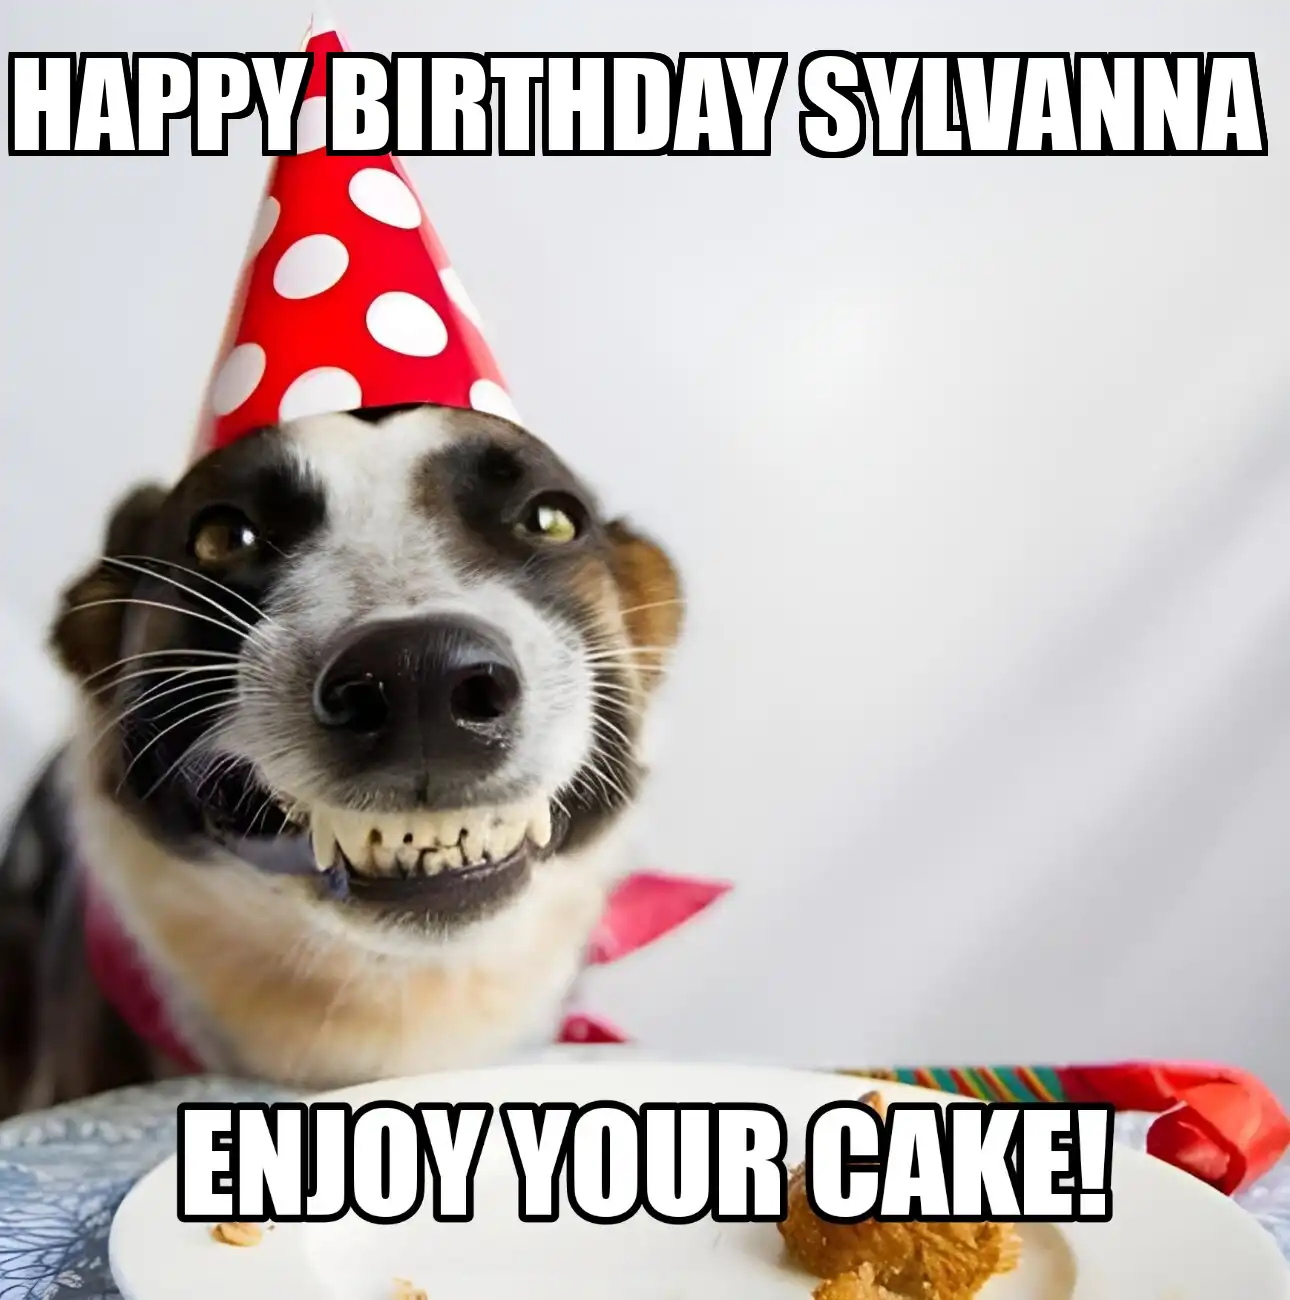 Happy Birthday Sylvanna Enjoy Your Cake Dog Meme